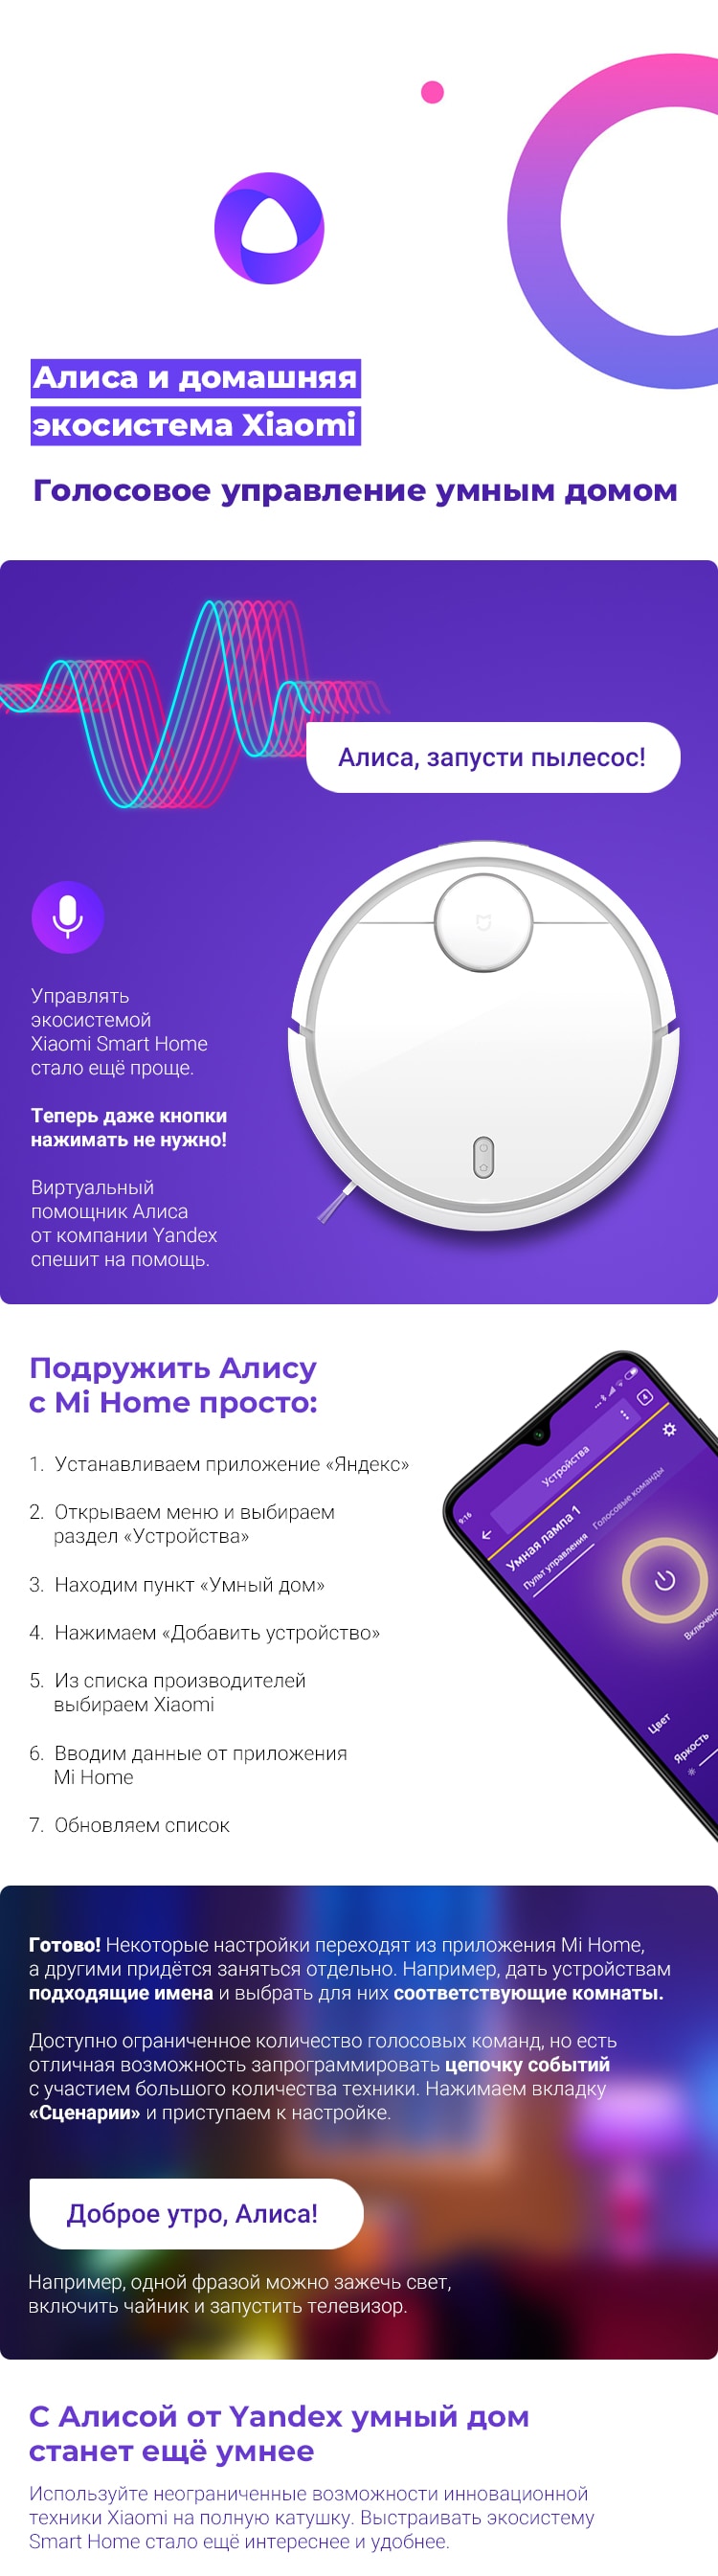 Управление Xiaomi Smart Home с помощью Алисы от Yandex